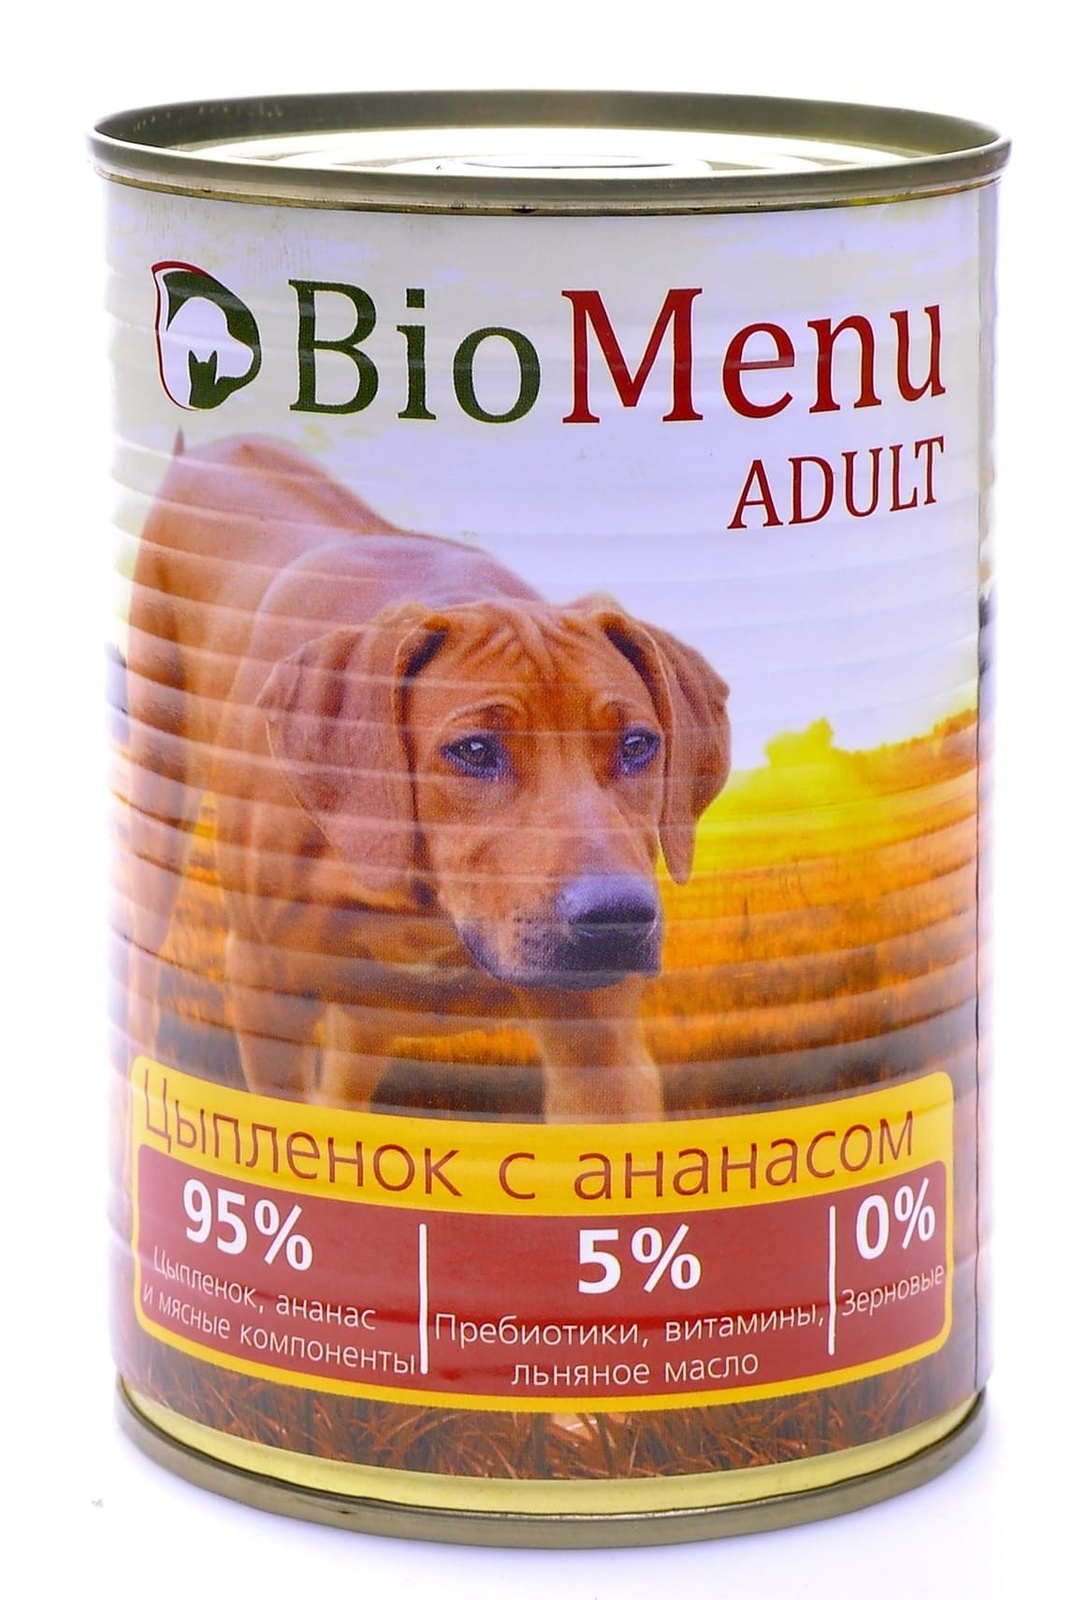 BioMenu BioMenu консервы для собак цыпленок с ананасом (100 г) biomenu biomenu консервы для собак цыпленок с ананасом 100 г